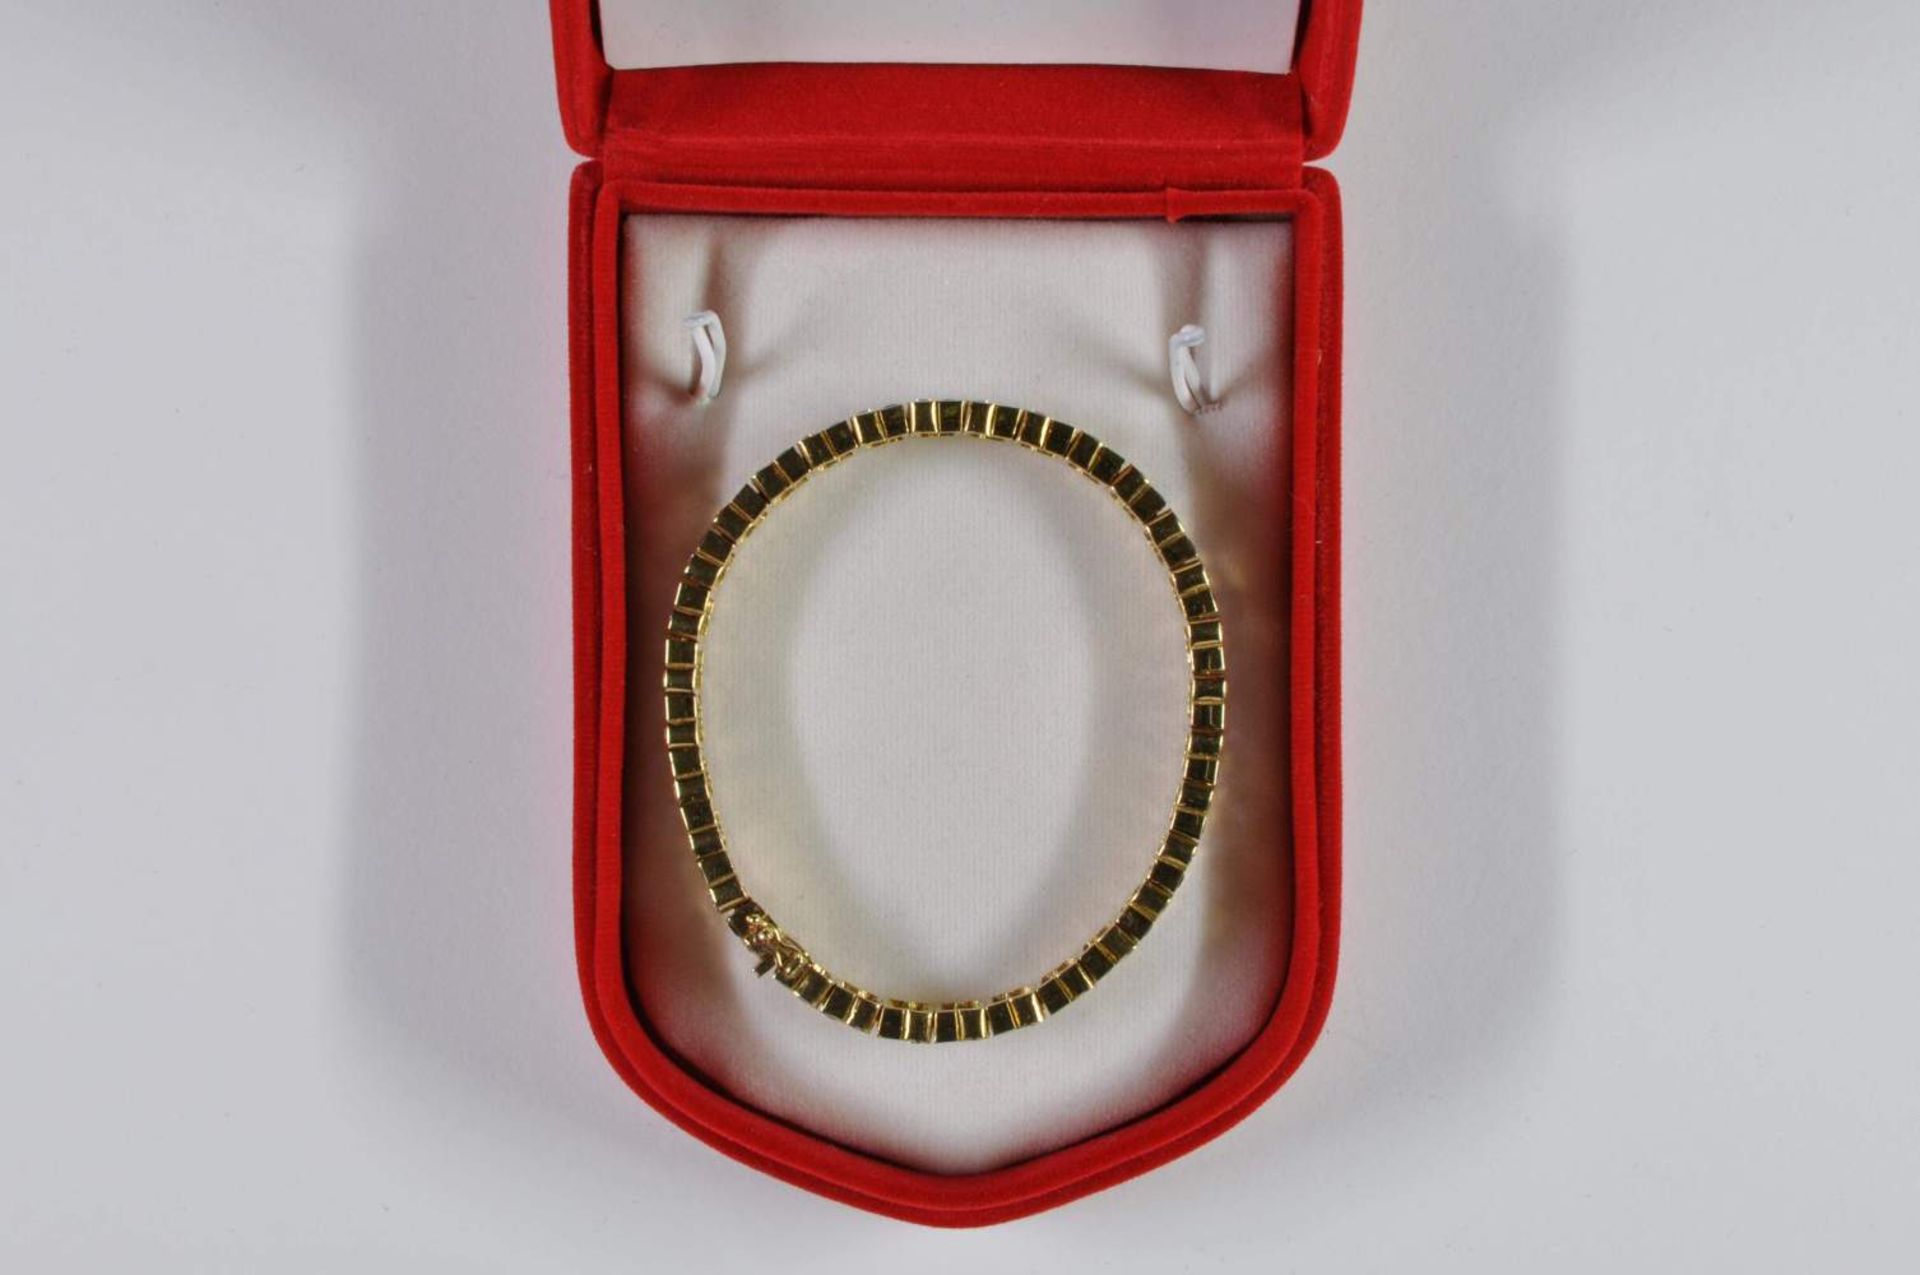 Saphir-Brillant-Armband, 750 Gelbgold, Punze, 66 Brillanten von zus. ca. 3,2ct, 64 Saphiren von zus. - Bild 18 aus 20